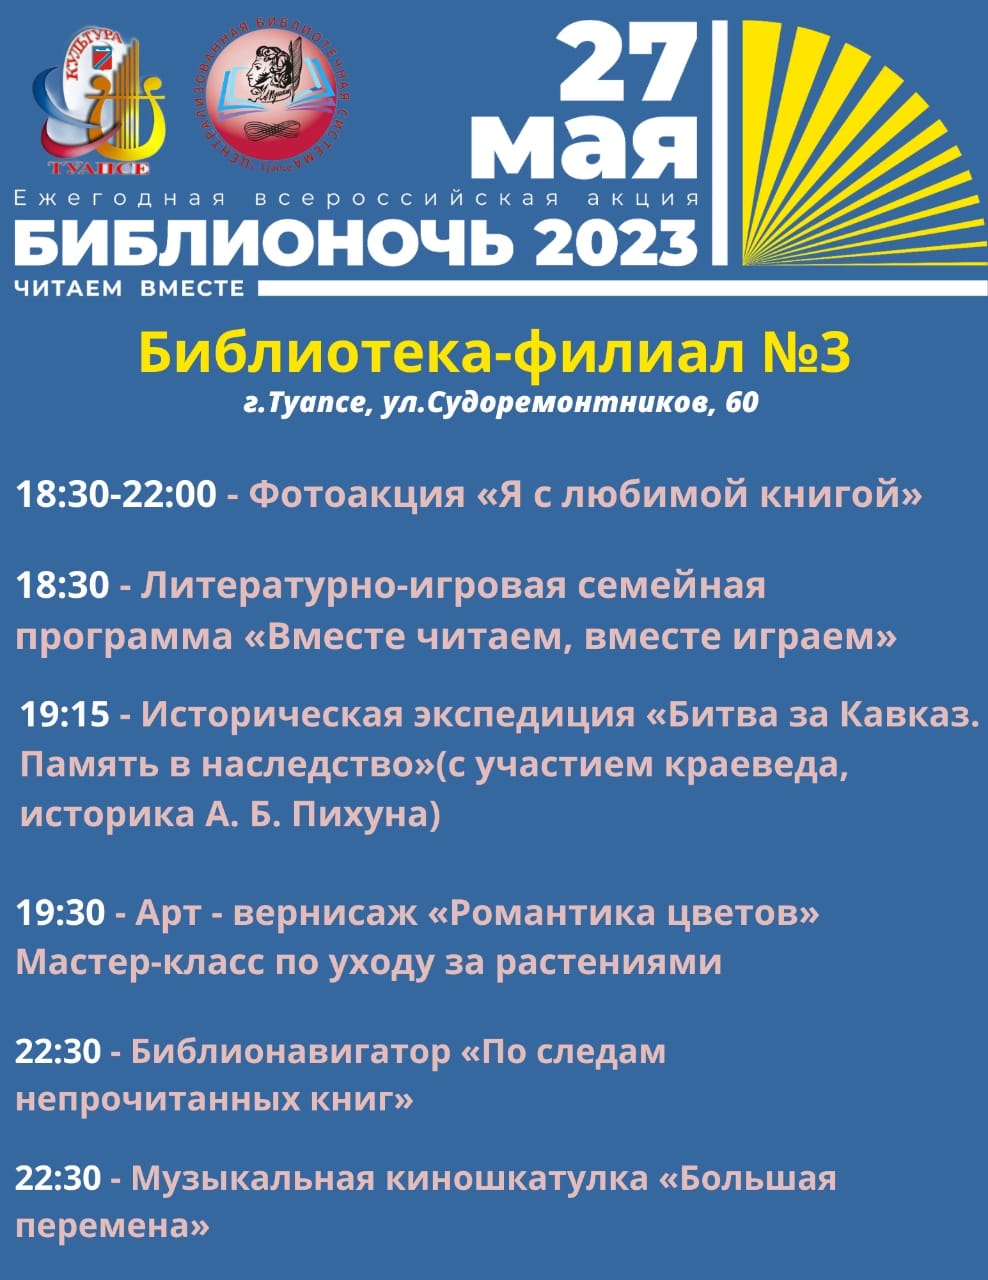 "Библионочь-2023"